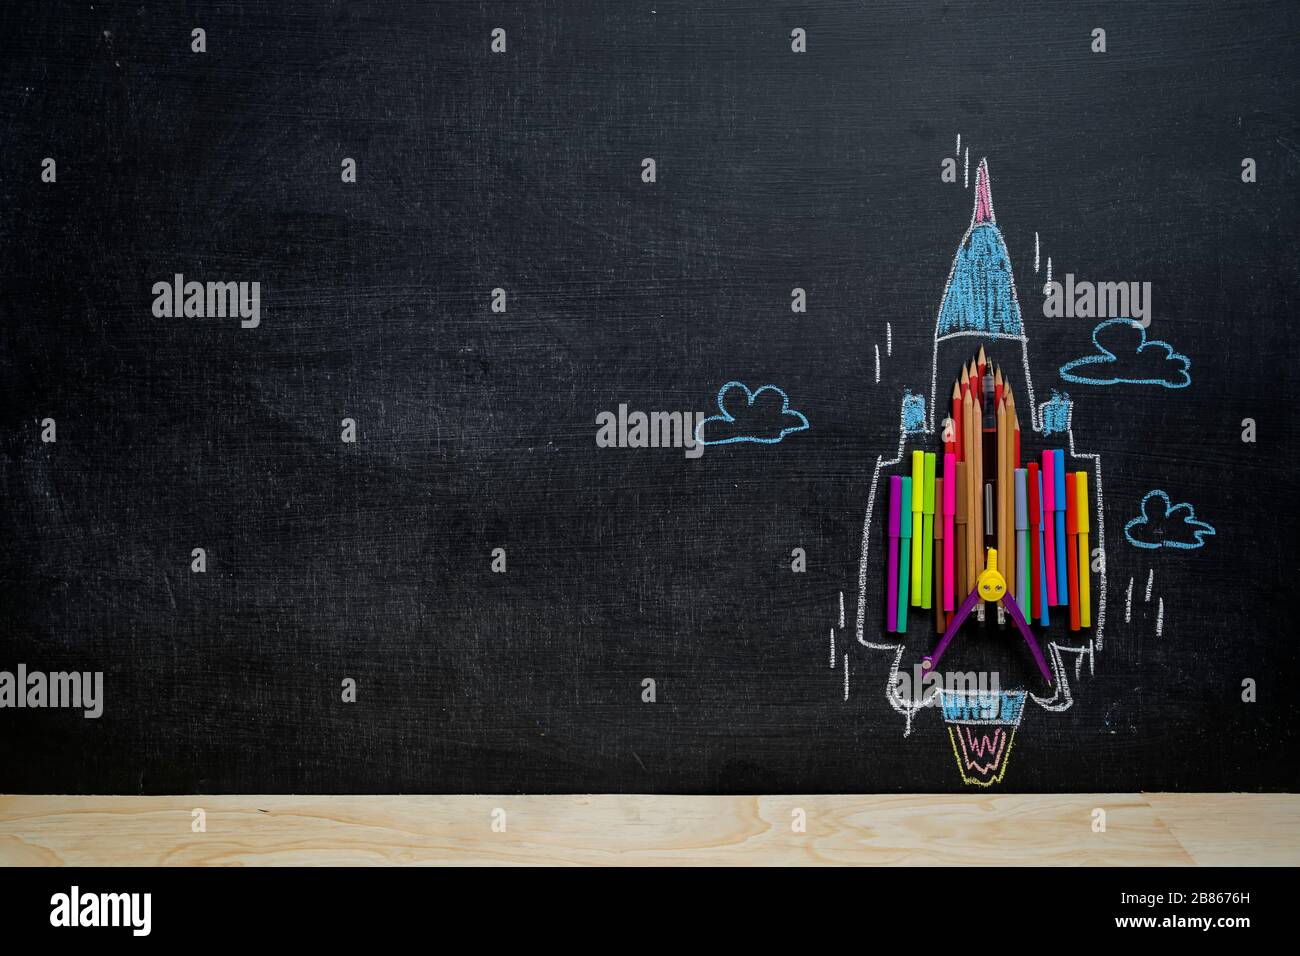 Konzept "Back to School". Schulbedarf, Bleistifte, Zauberfarbe, Stifte, die im Vergleich zum Lernen den Hochgeschwindigkeits-Jets ähneln, müssen gefördert werden Stockfoto